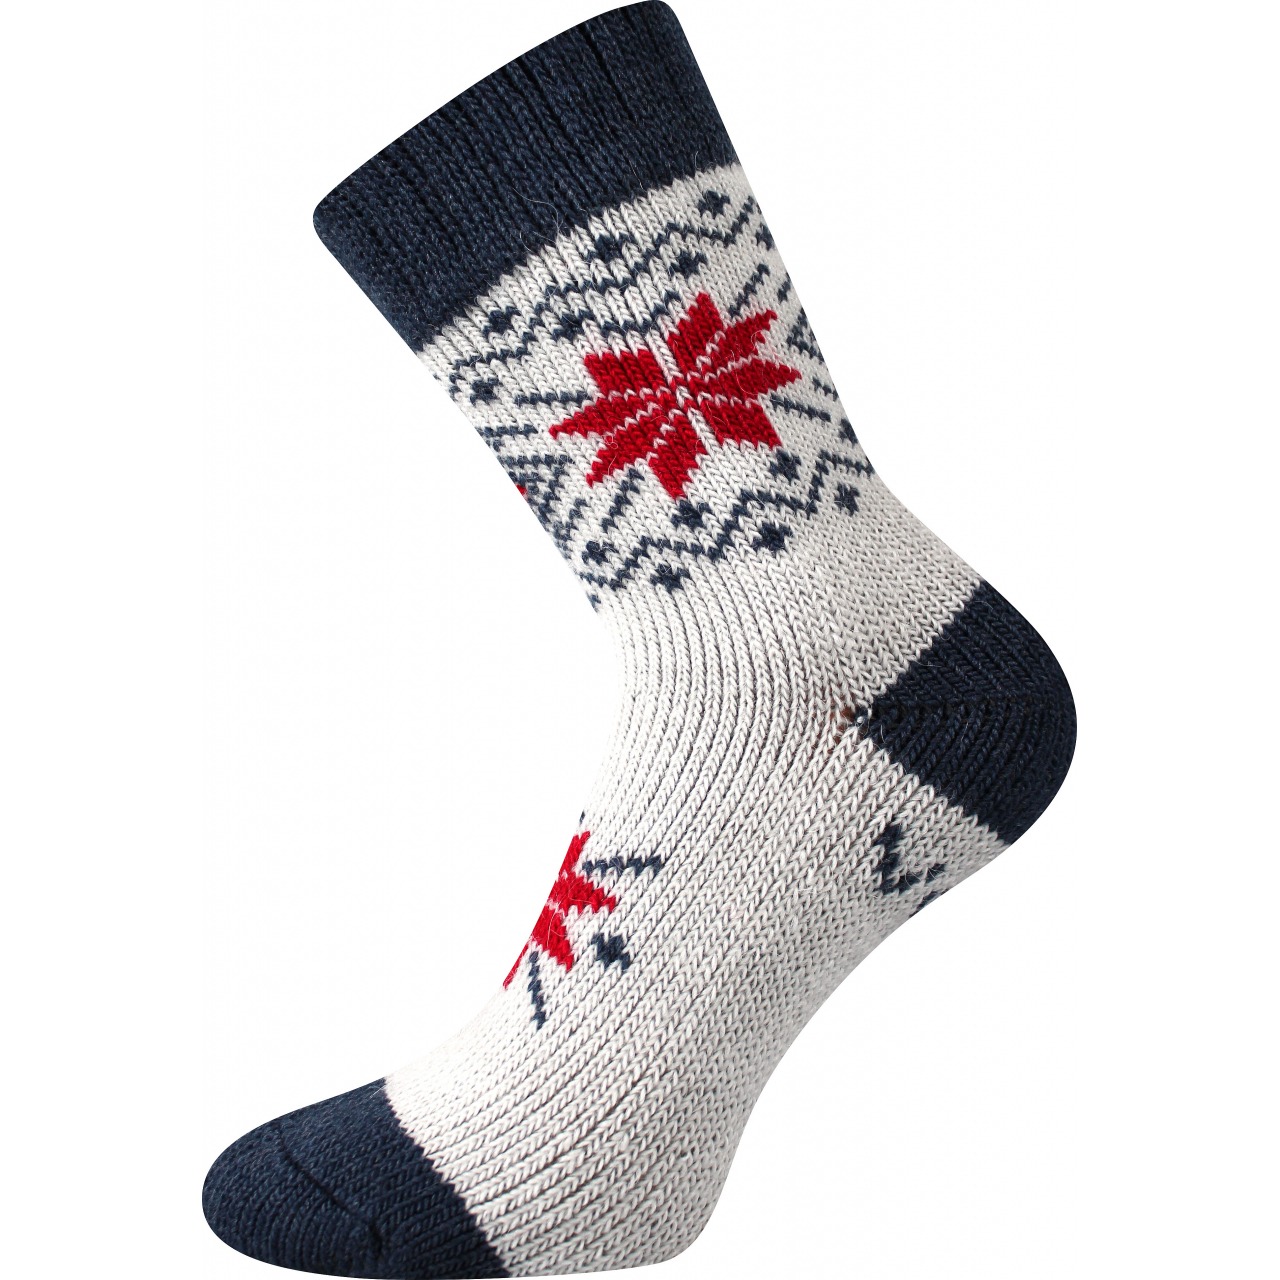 Ponožky unisex vlněné Voxx Alta - bílé-černé, 43-46